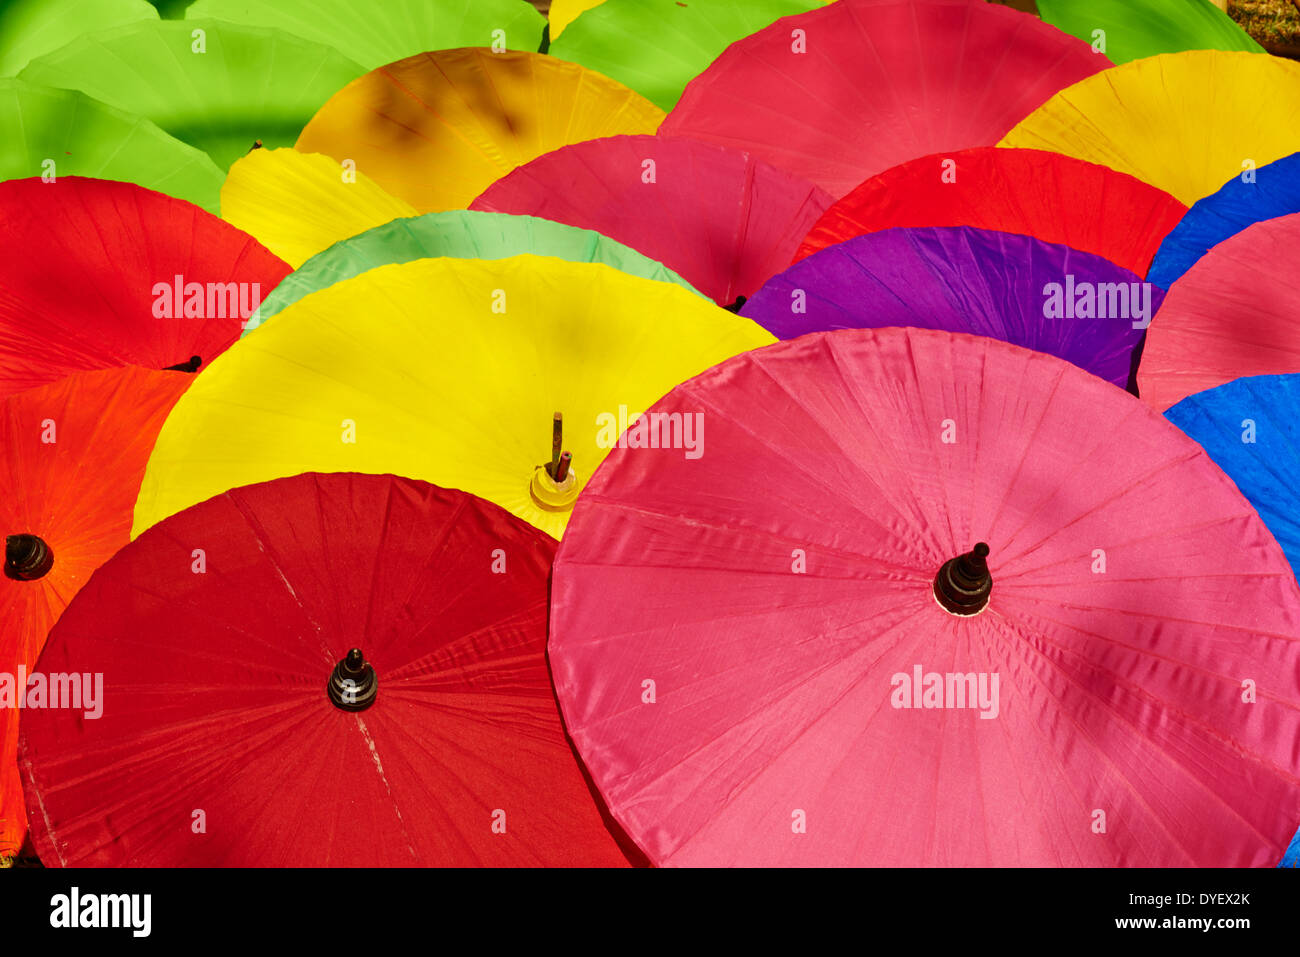 La Thaïlande, Chiang Mai, parapluie à Borsang village artisanal Banque D'Images